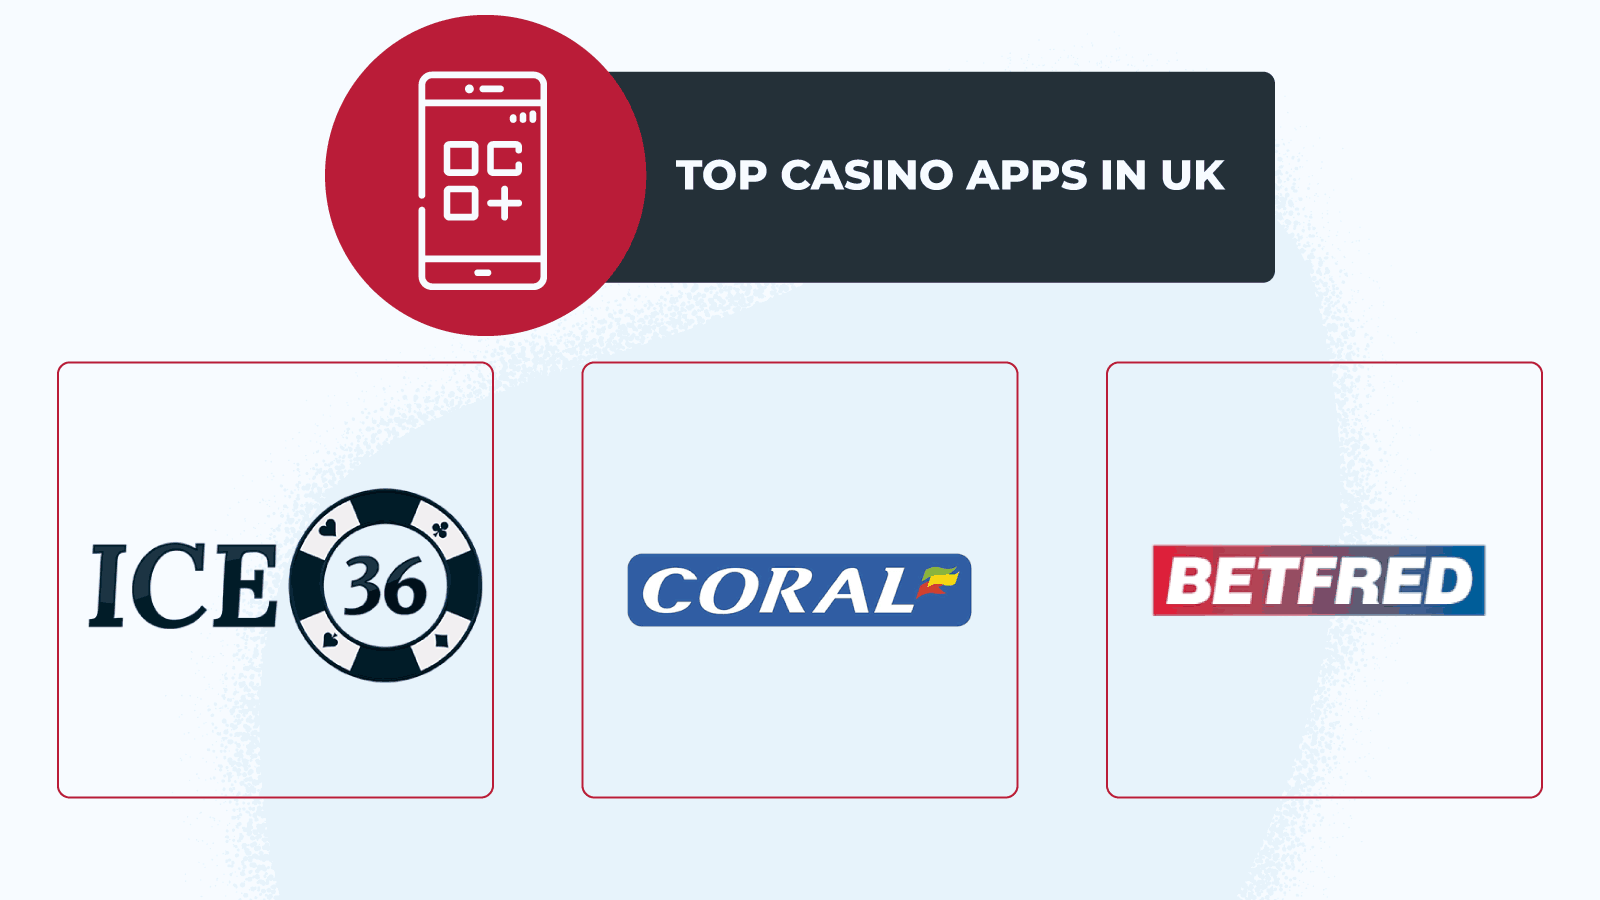 Top casino apps in UK